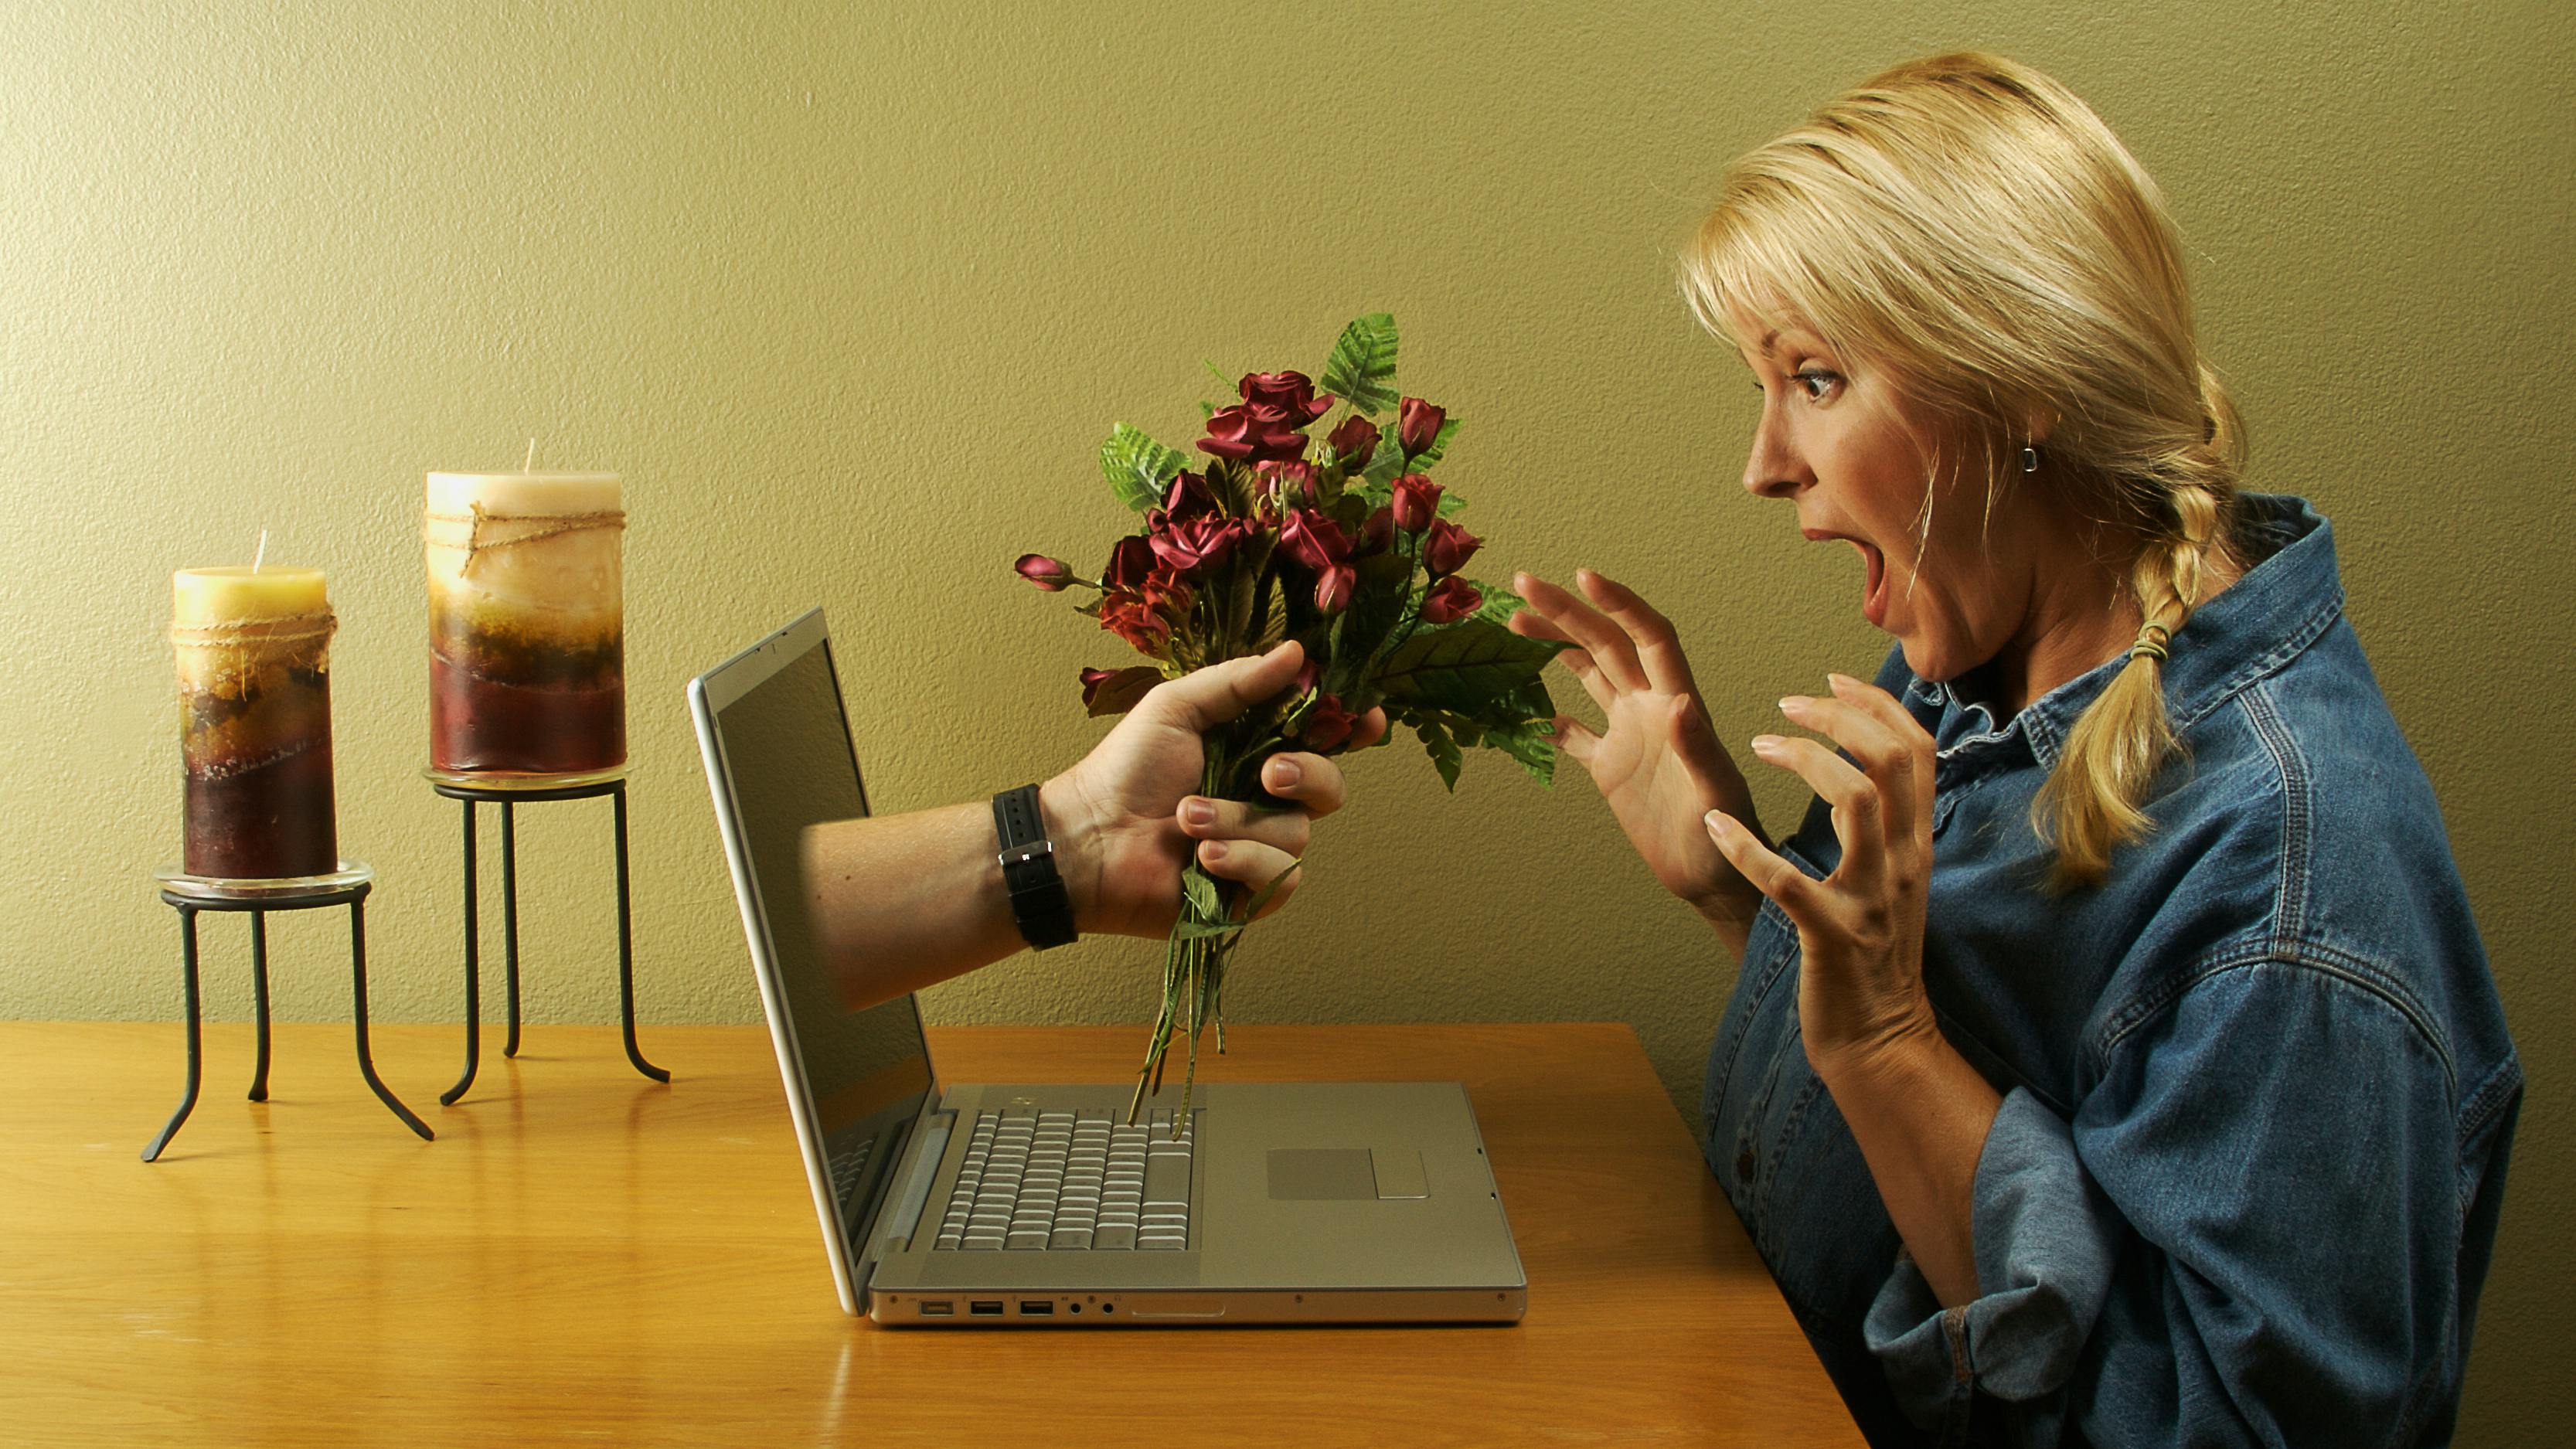 Знакомства для общения в интернете. Виртуальная любовь. Женщина в интернете. Разговор в интернете. Отношения в инете.